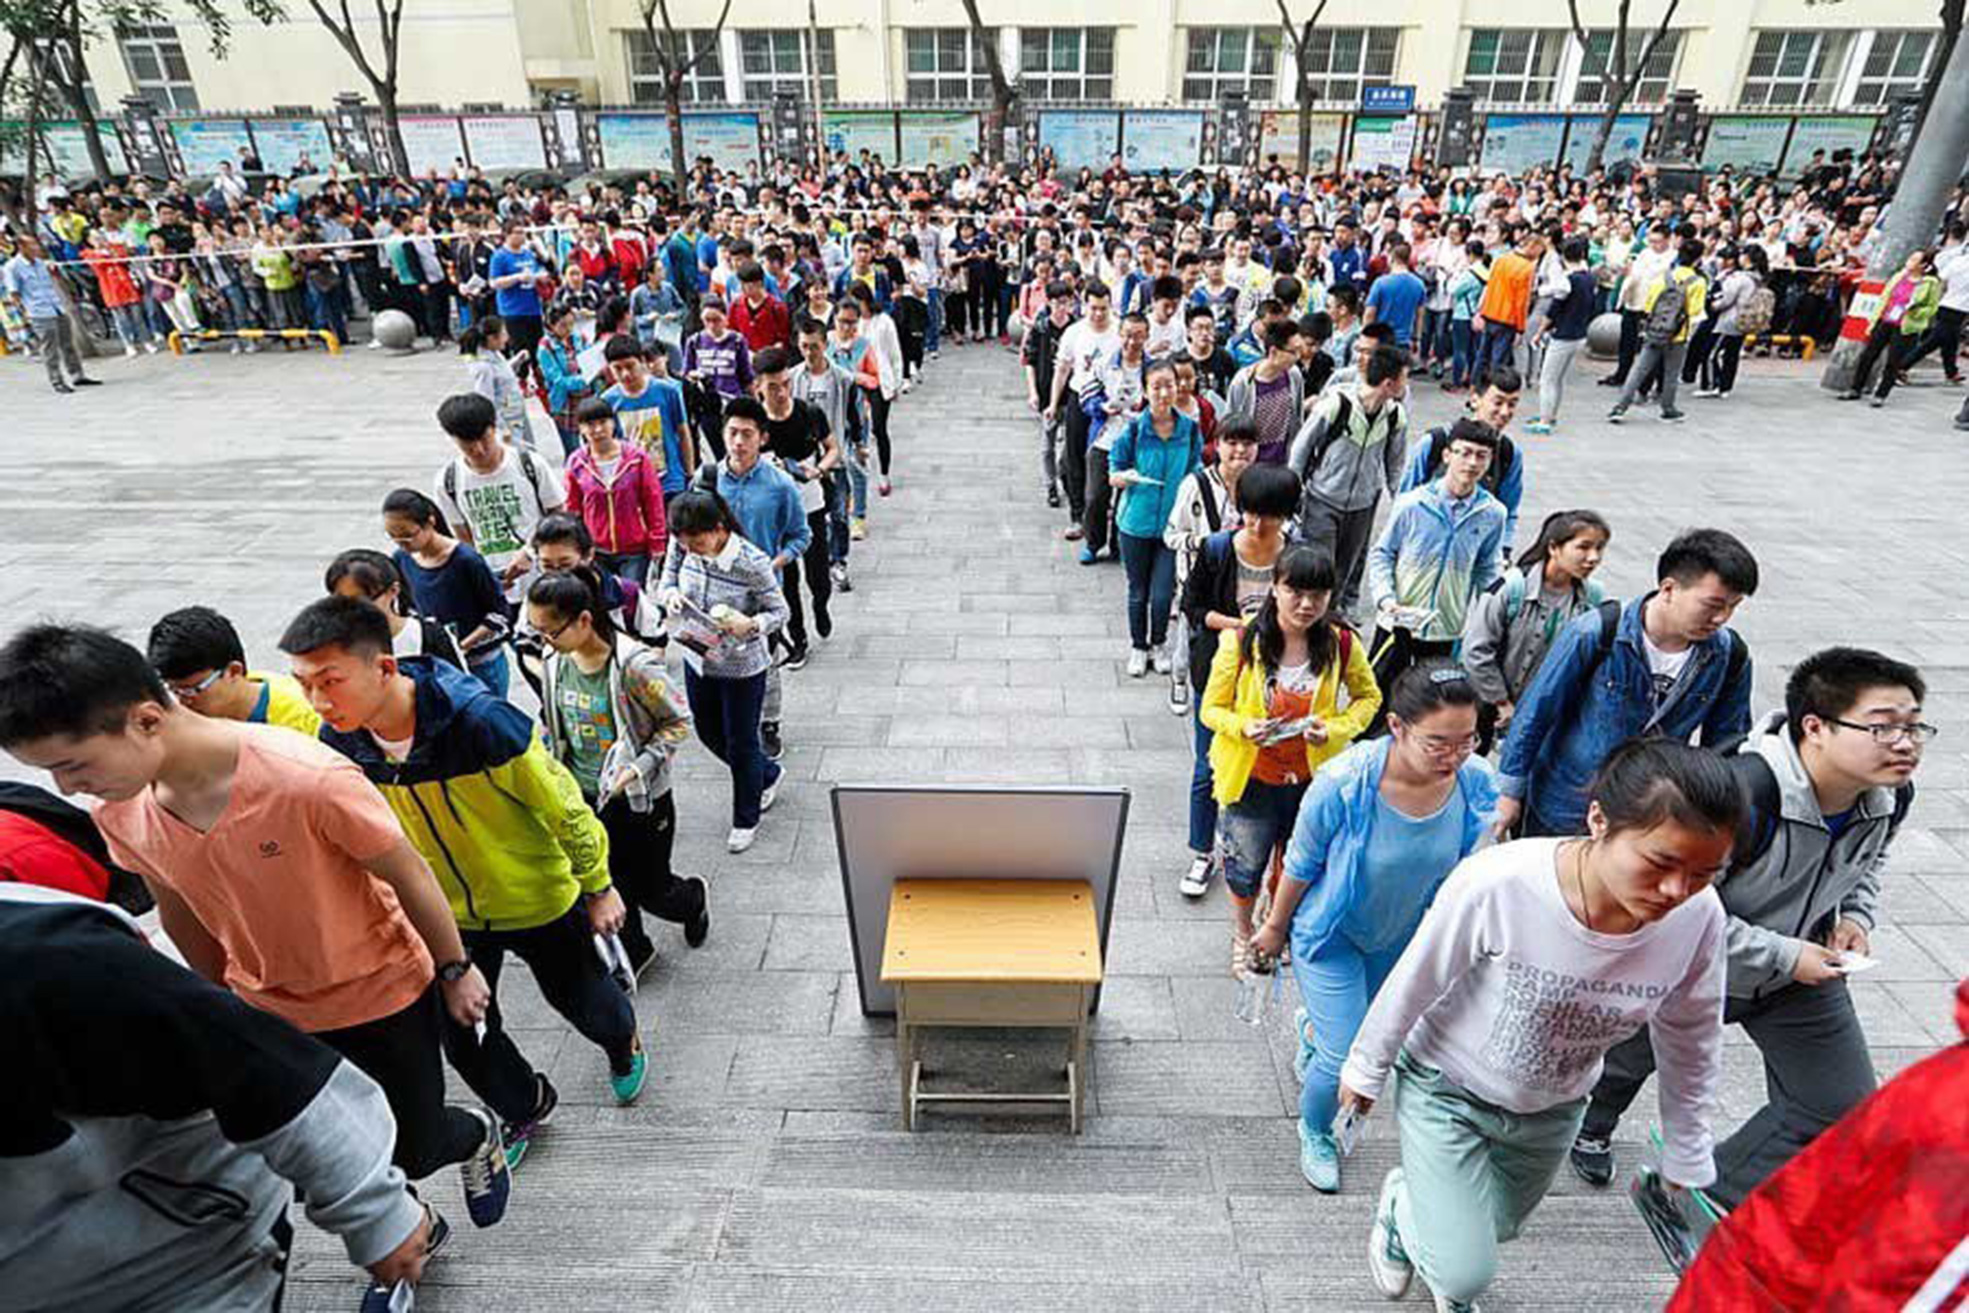 Thí sinh tiến vào trường thi tại kỳ thi khốc liệt nhất thế giới ở Trung Quốc. Ảnh: IT